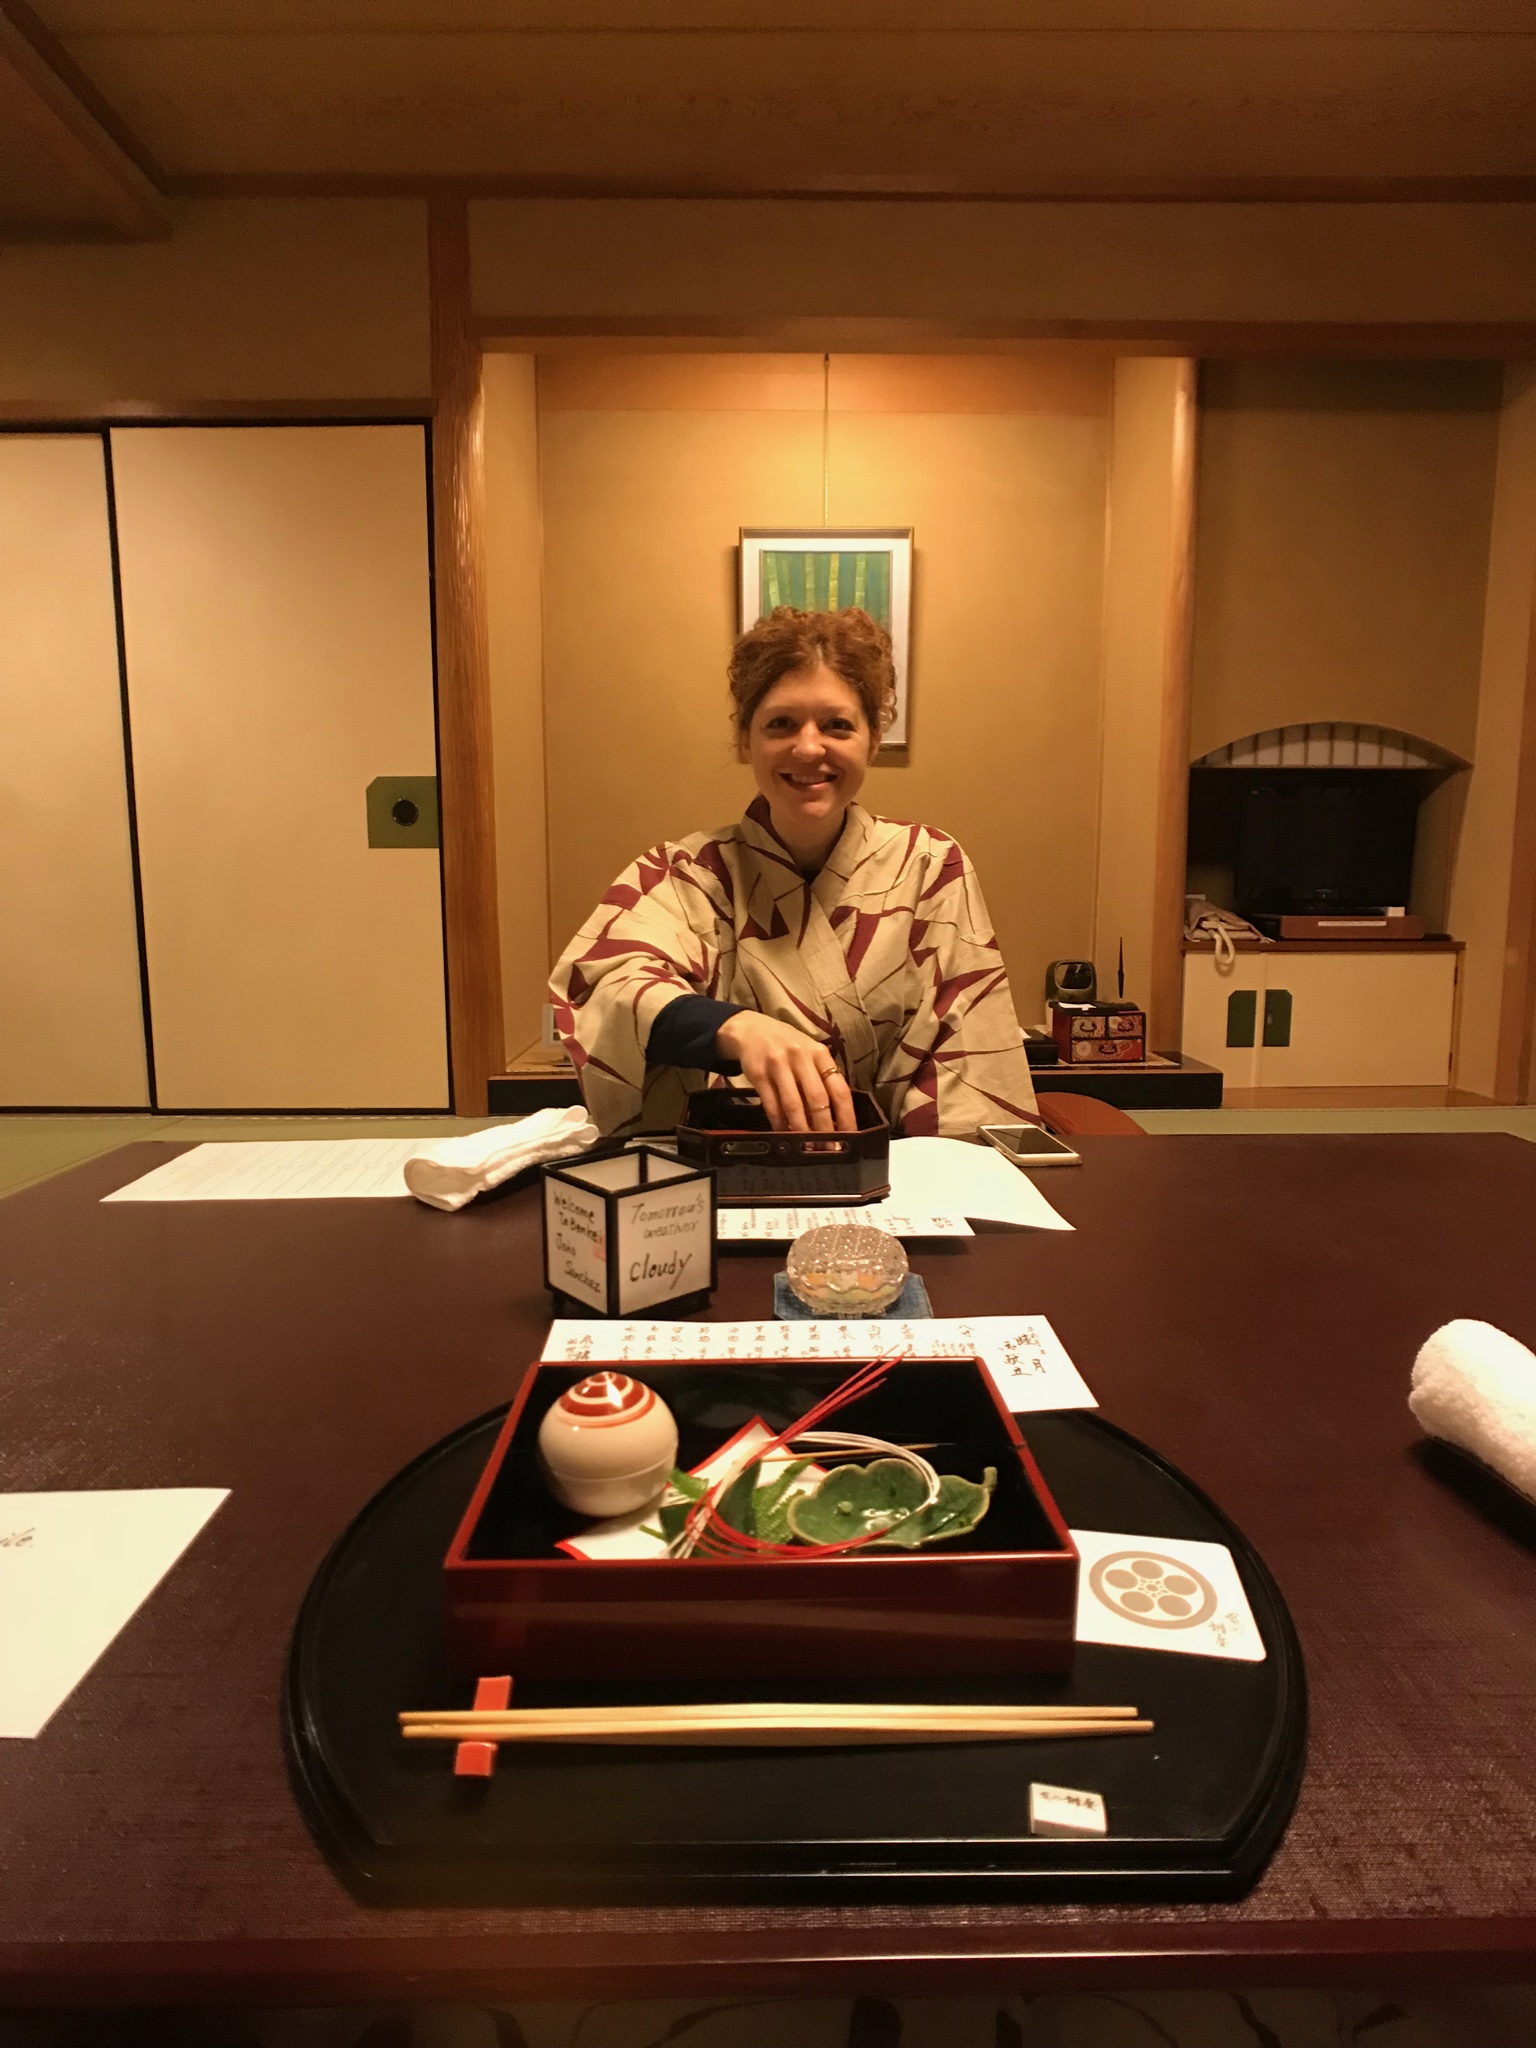 Dinner in a ryokan - Kyoto, Japan